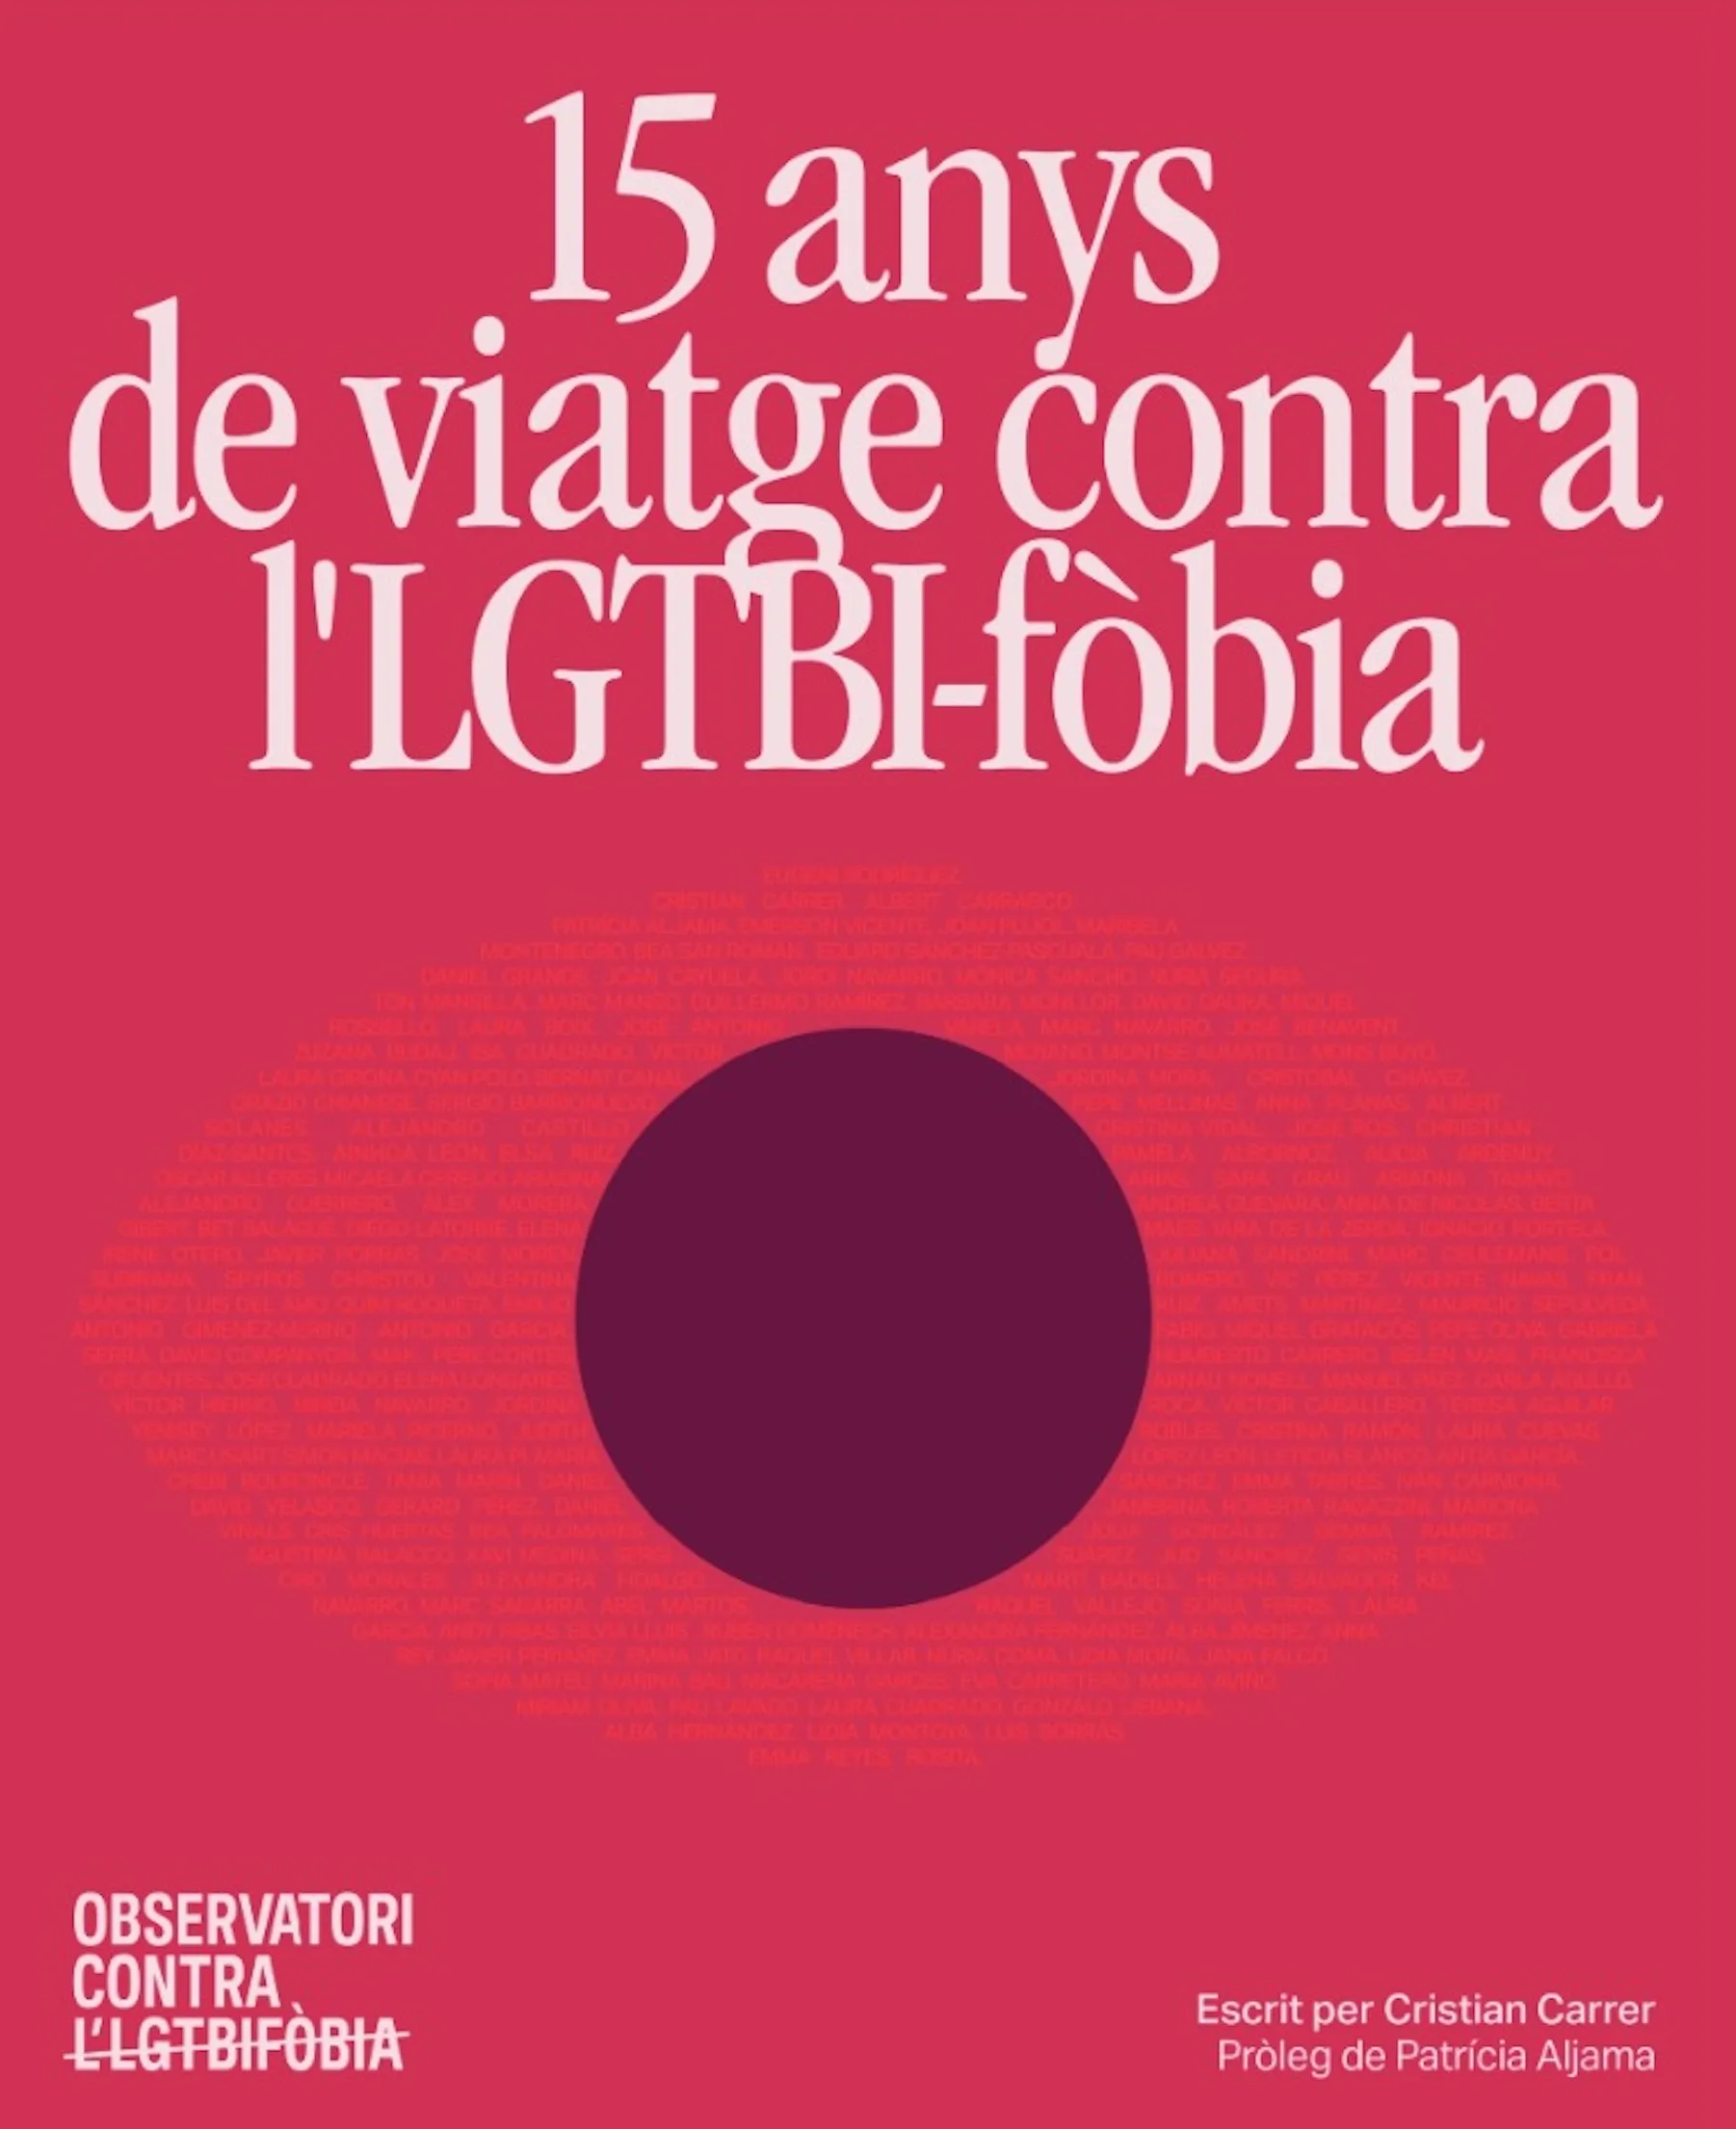 El Observatori Contra l'Homofobia cumple 15 años